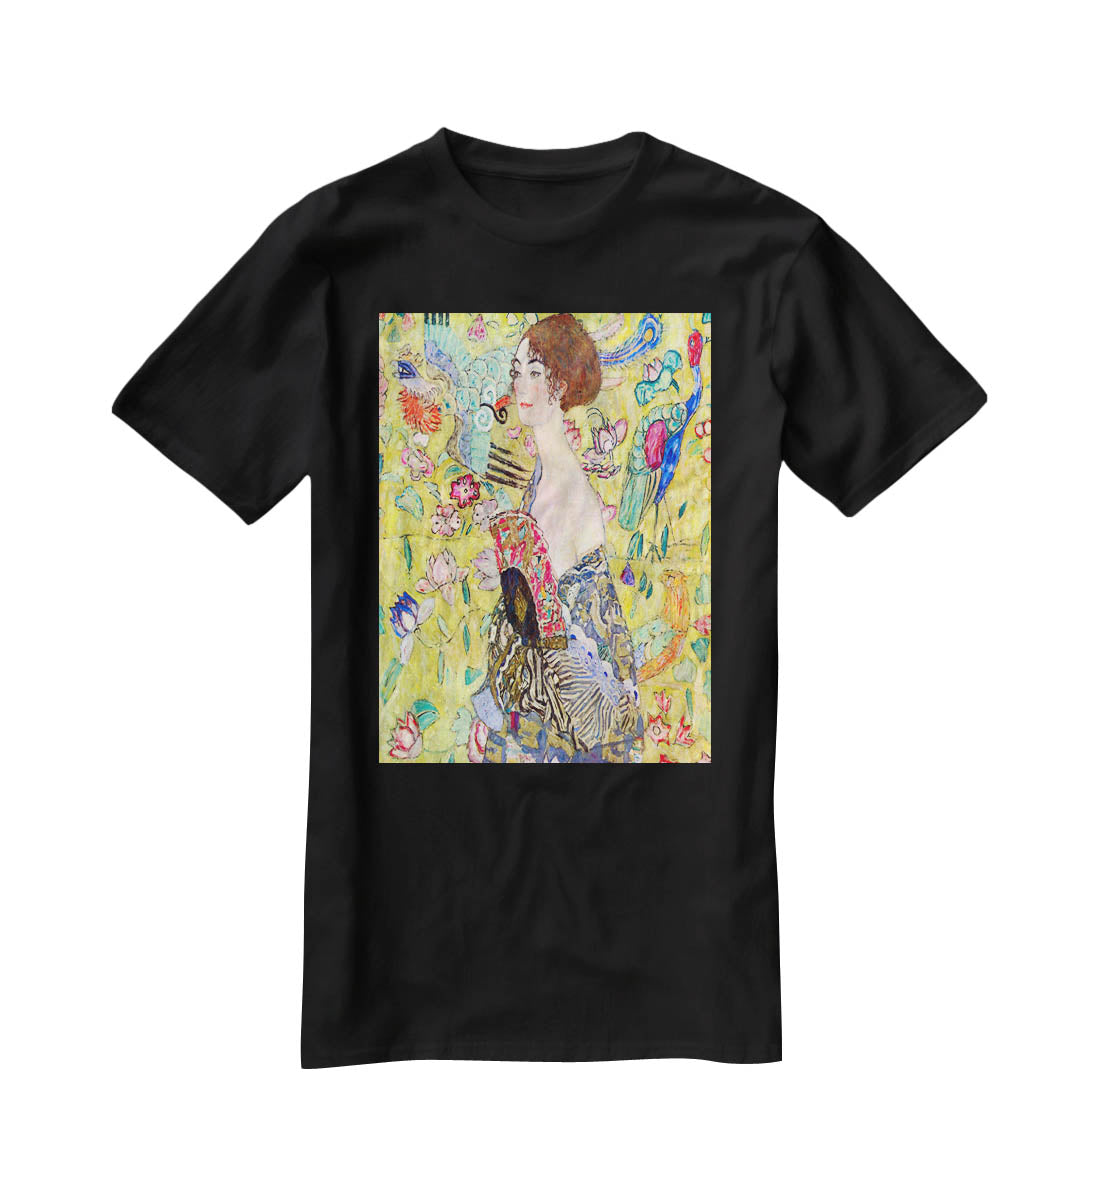 Lady with fan by Klimt T-Shirt - Canvas Art Rocks - 1